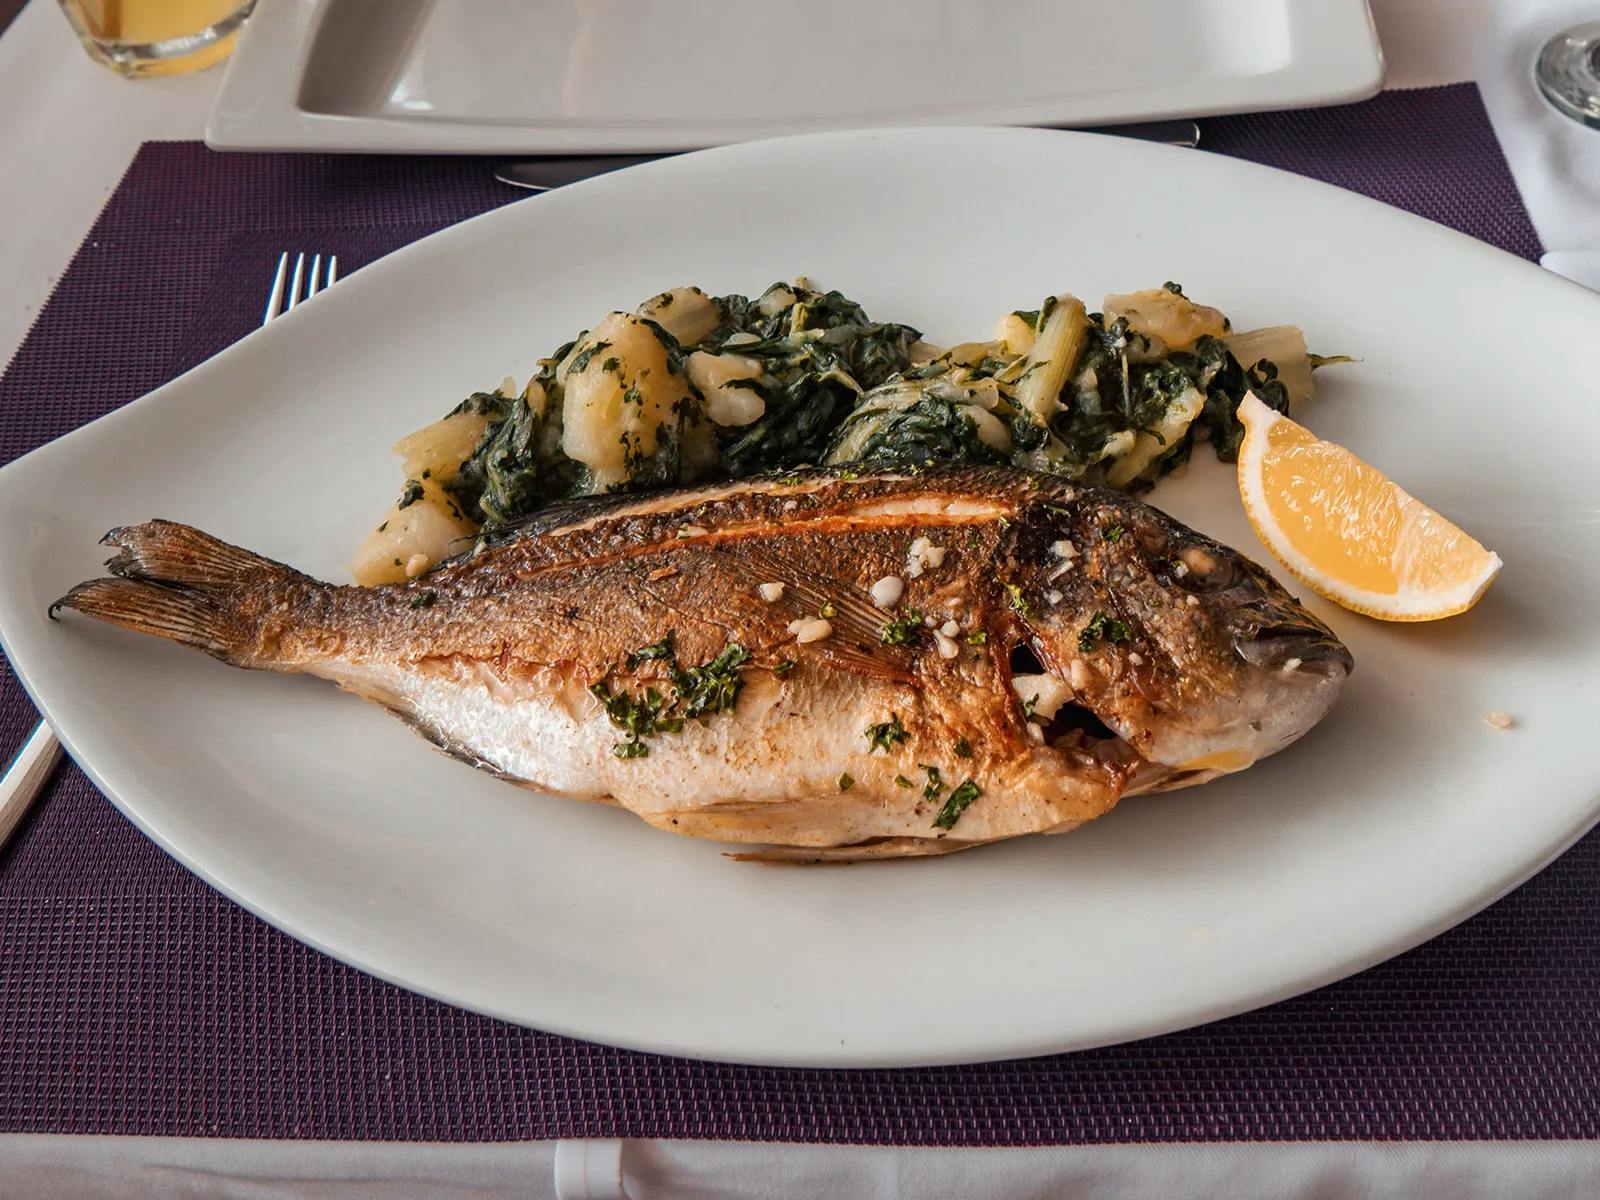 Frischen Fisch bekommst du in Kroatien immer so serviert - also lerne am besten vorher, wie man filetiert!